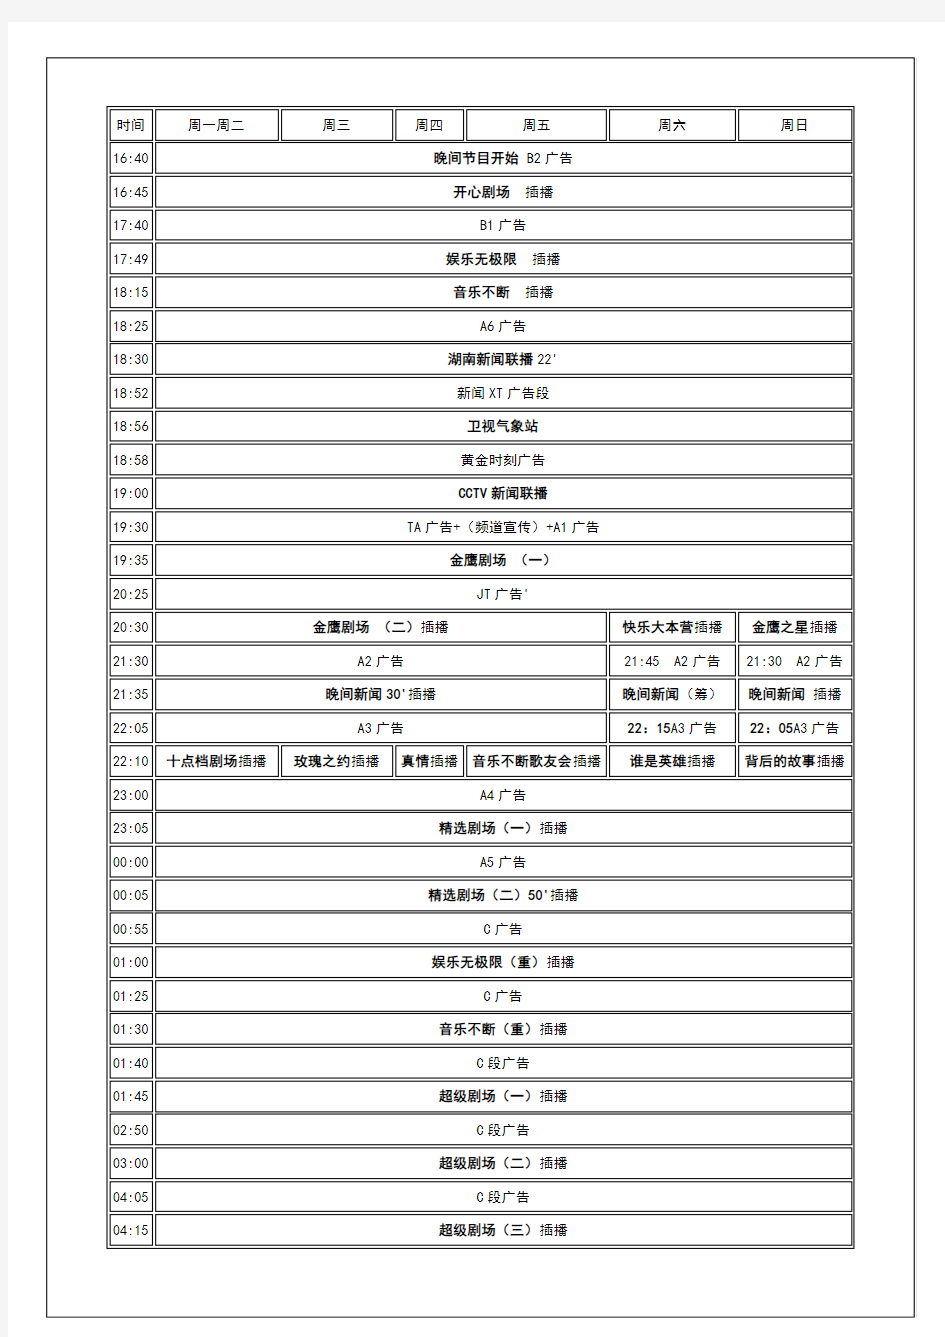 湖南卫视2004年节目,广告编排表